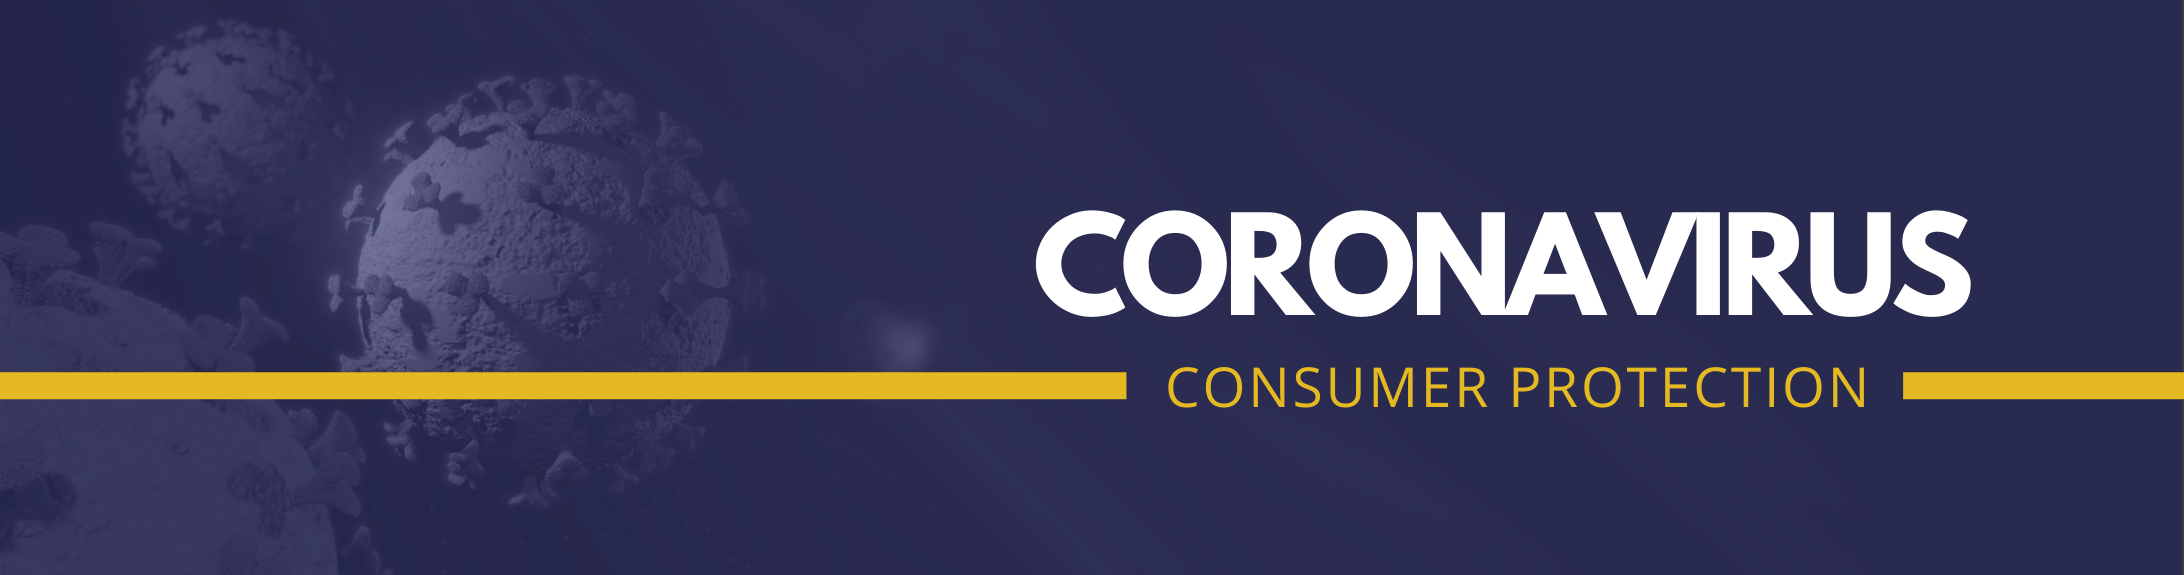 Coronavirus Consumer Protection